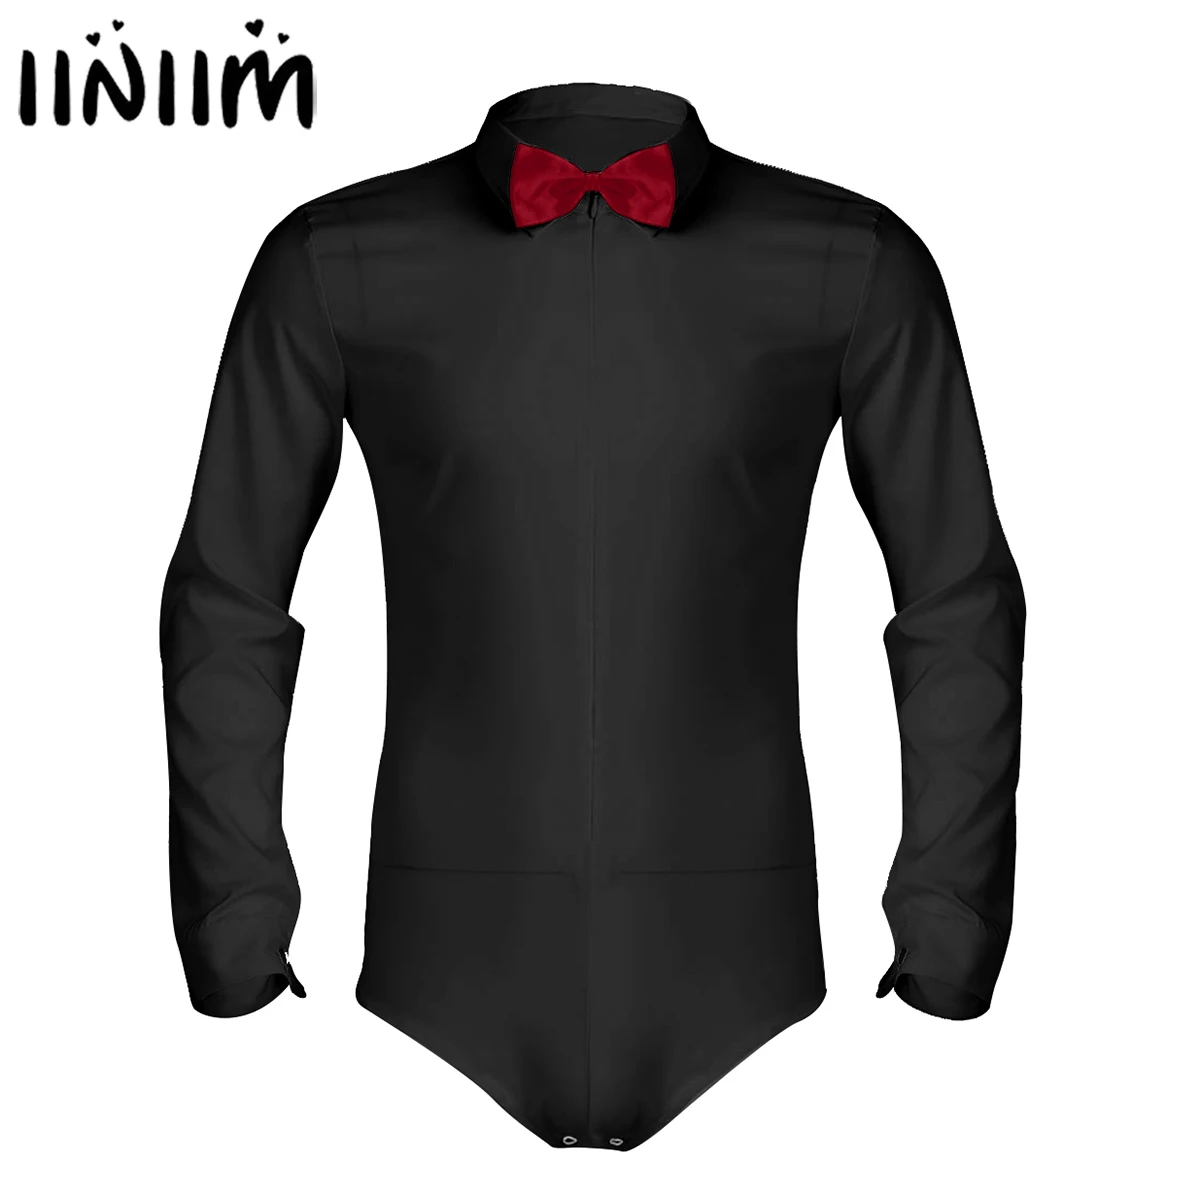 Iiniim мужской модный клубный комбинезон с длинным рукавом на молнии для латинских танцев рубашка с бабочкой для мужских костюмов вечерние комбинезоны